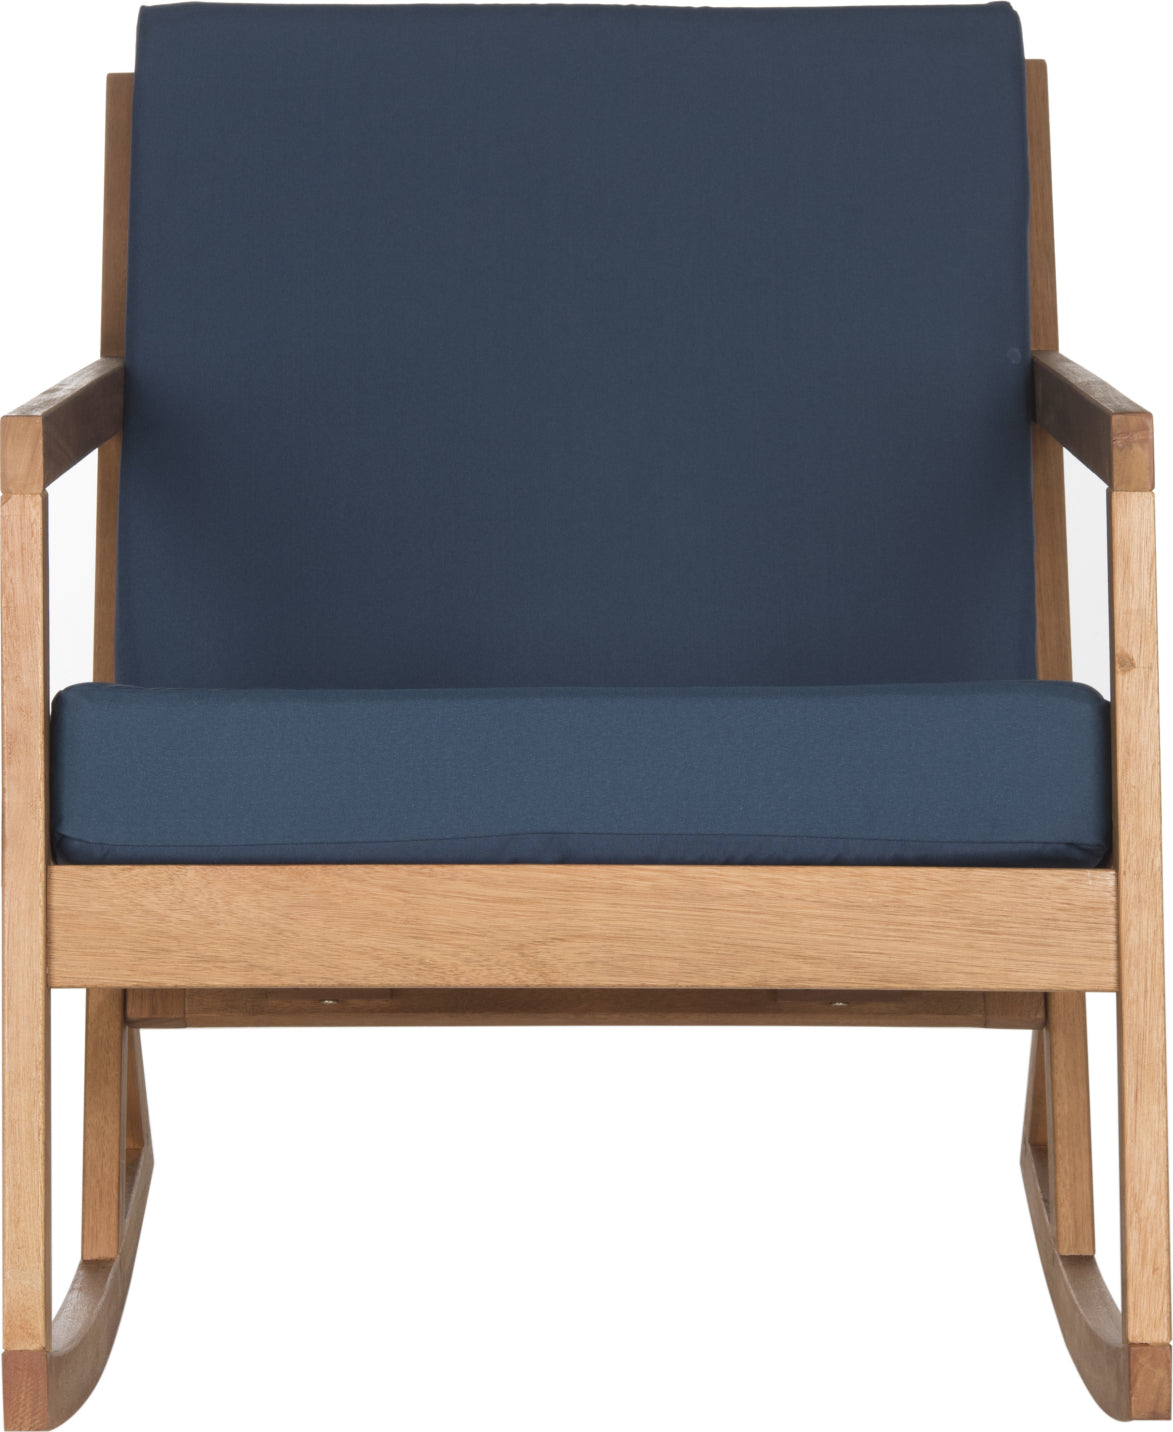 Safavieh Vernon Rocking Chair Teak Brown/Navy Furniture main image